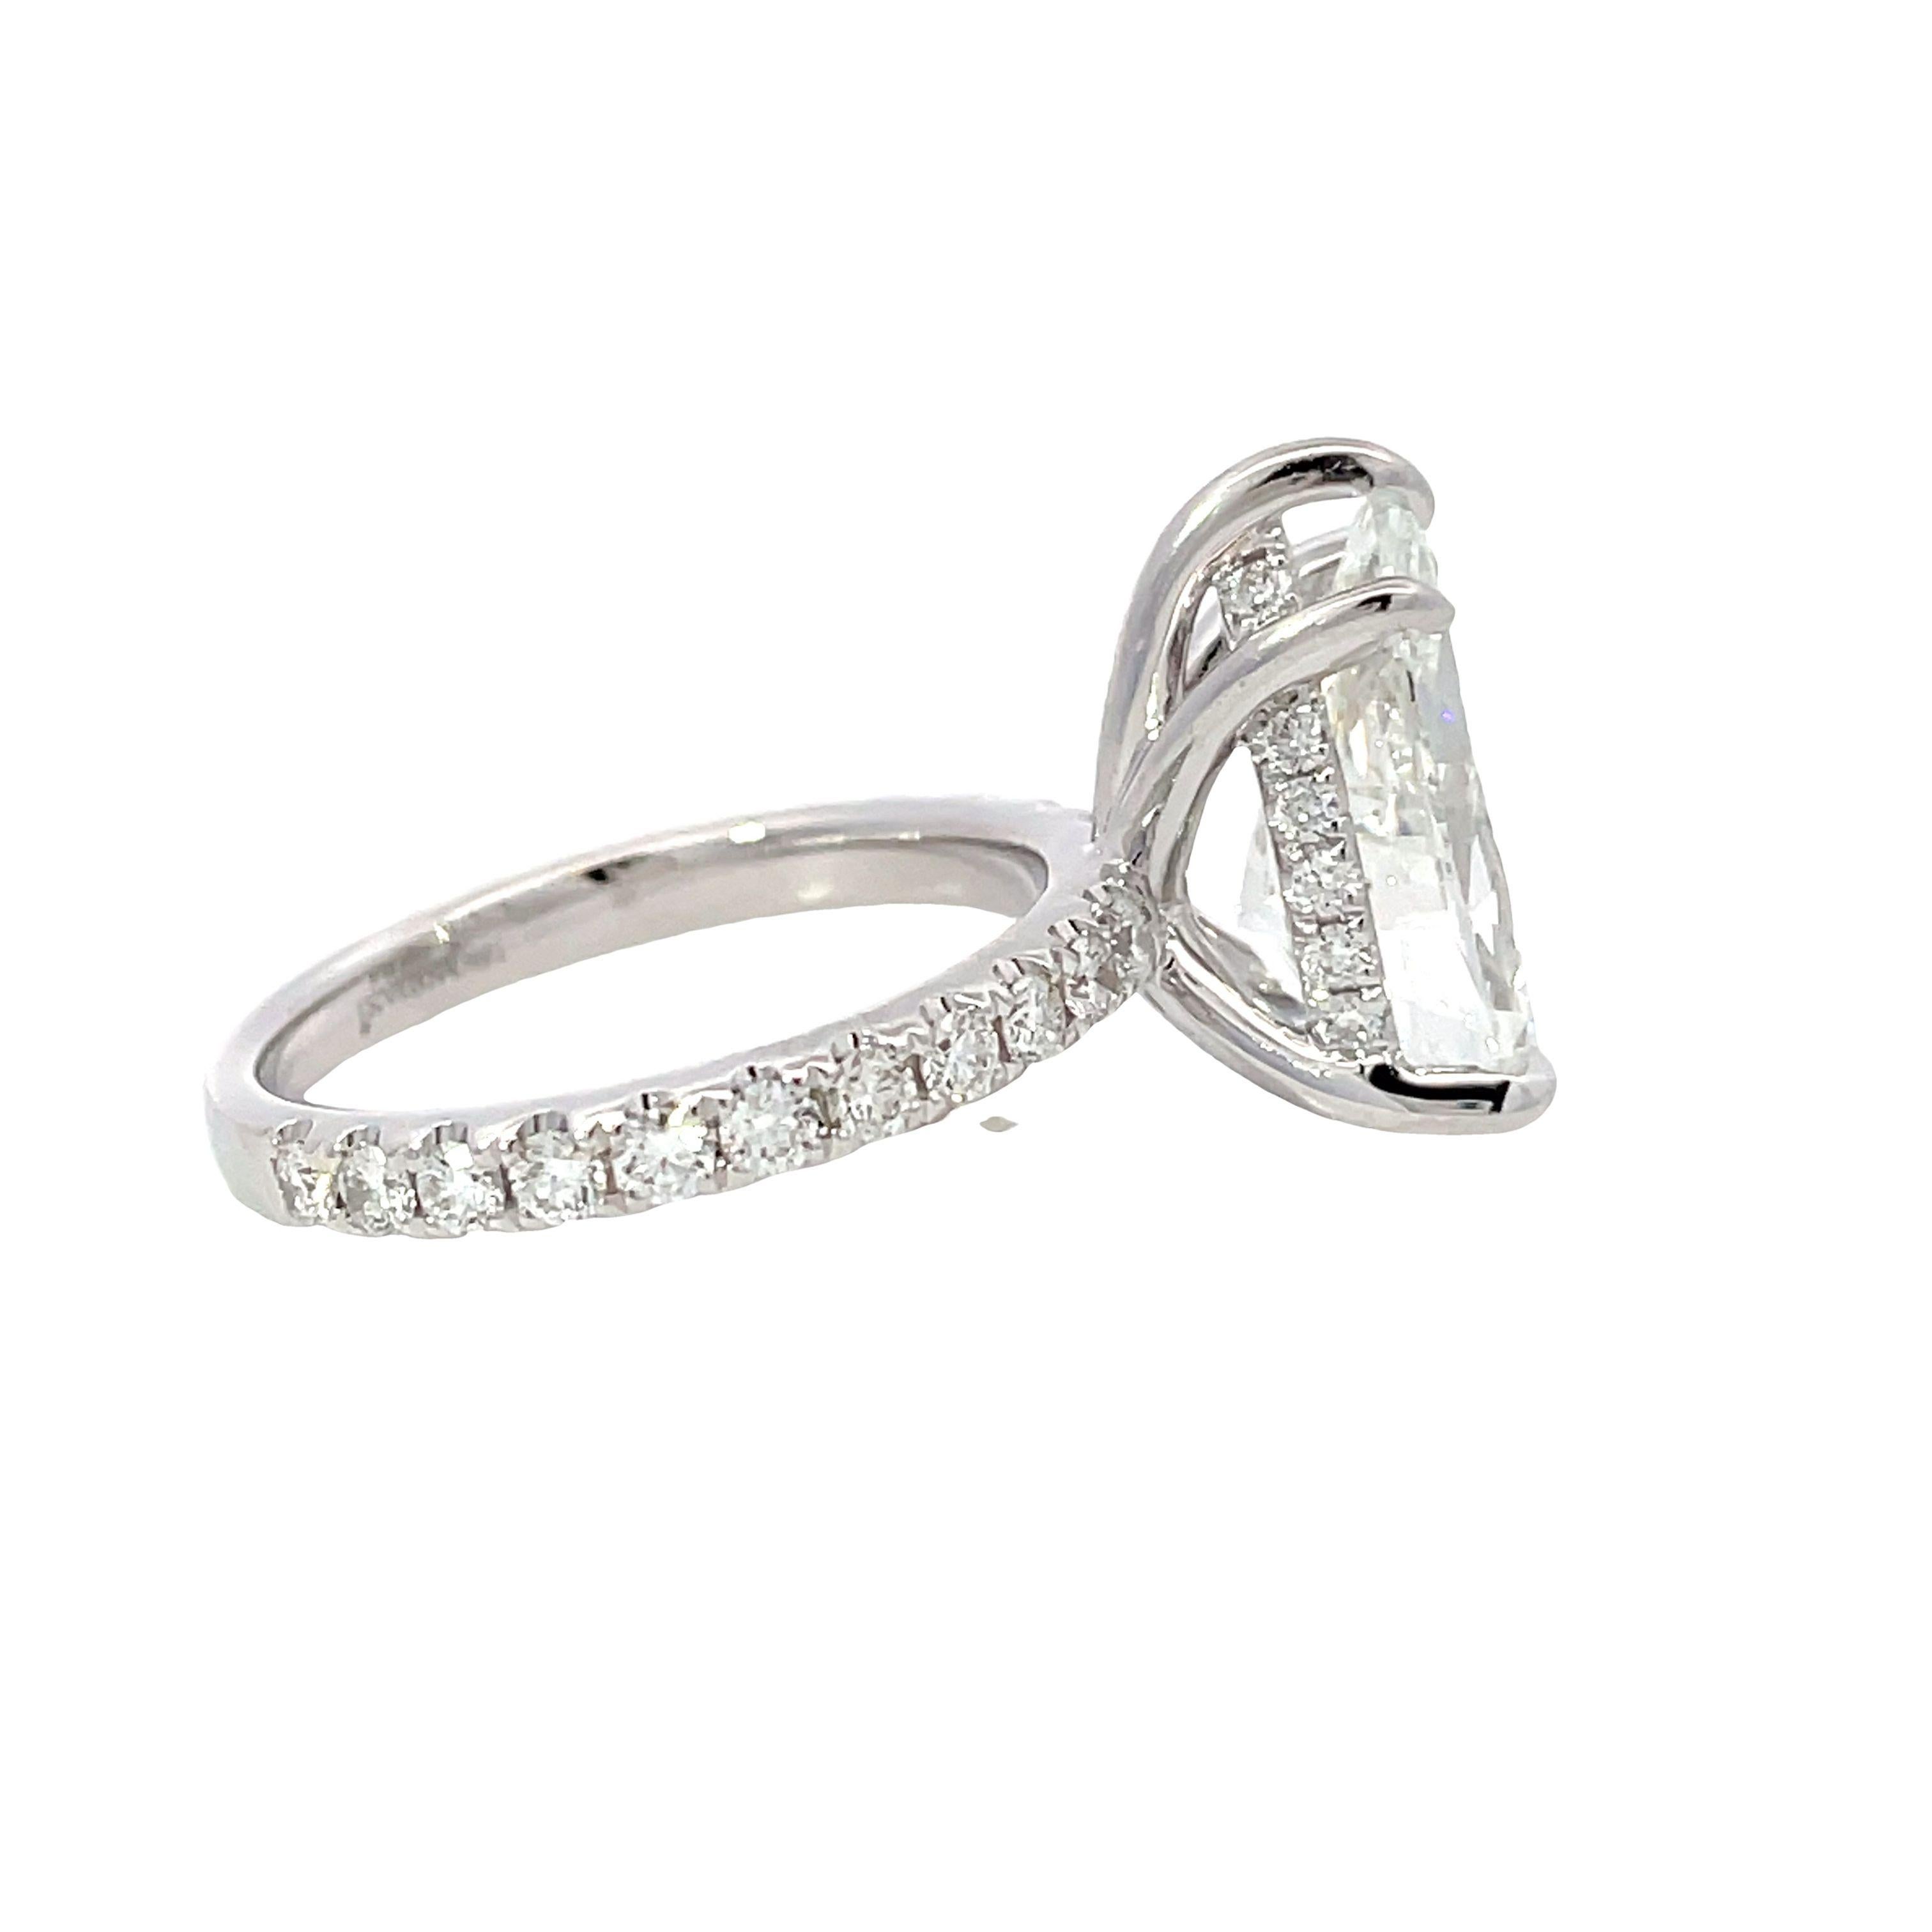 Embrassez la sophistication avec notre bague 18 carats qui met en valeur un diamant blanc en forme de poire de 5,03 cm3 (H, VS1) accentué par des diamants blancs ronds de 0,86 cm3, certifiés par le GIA (Cert. No. 7235044592).